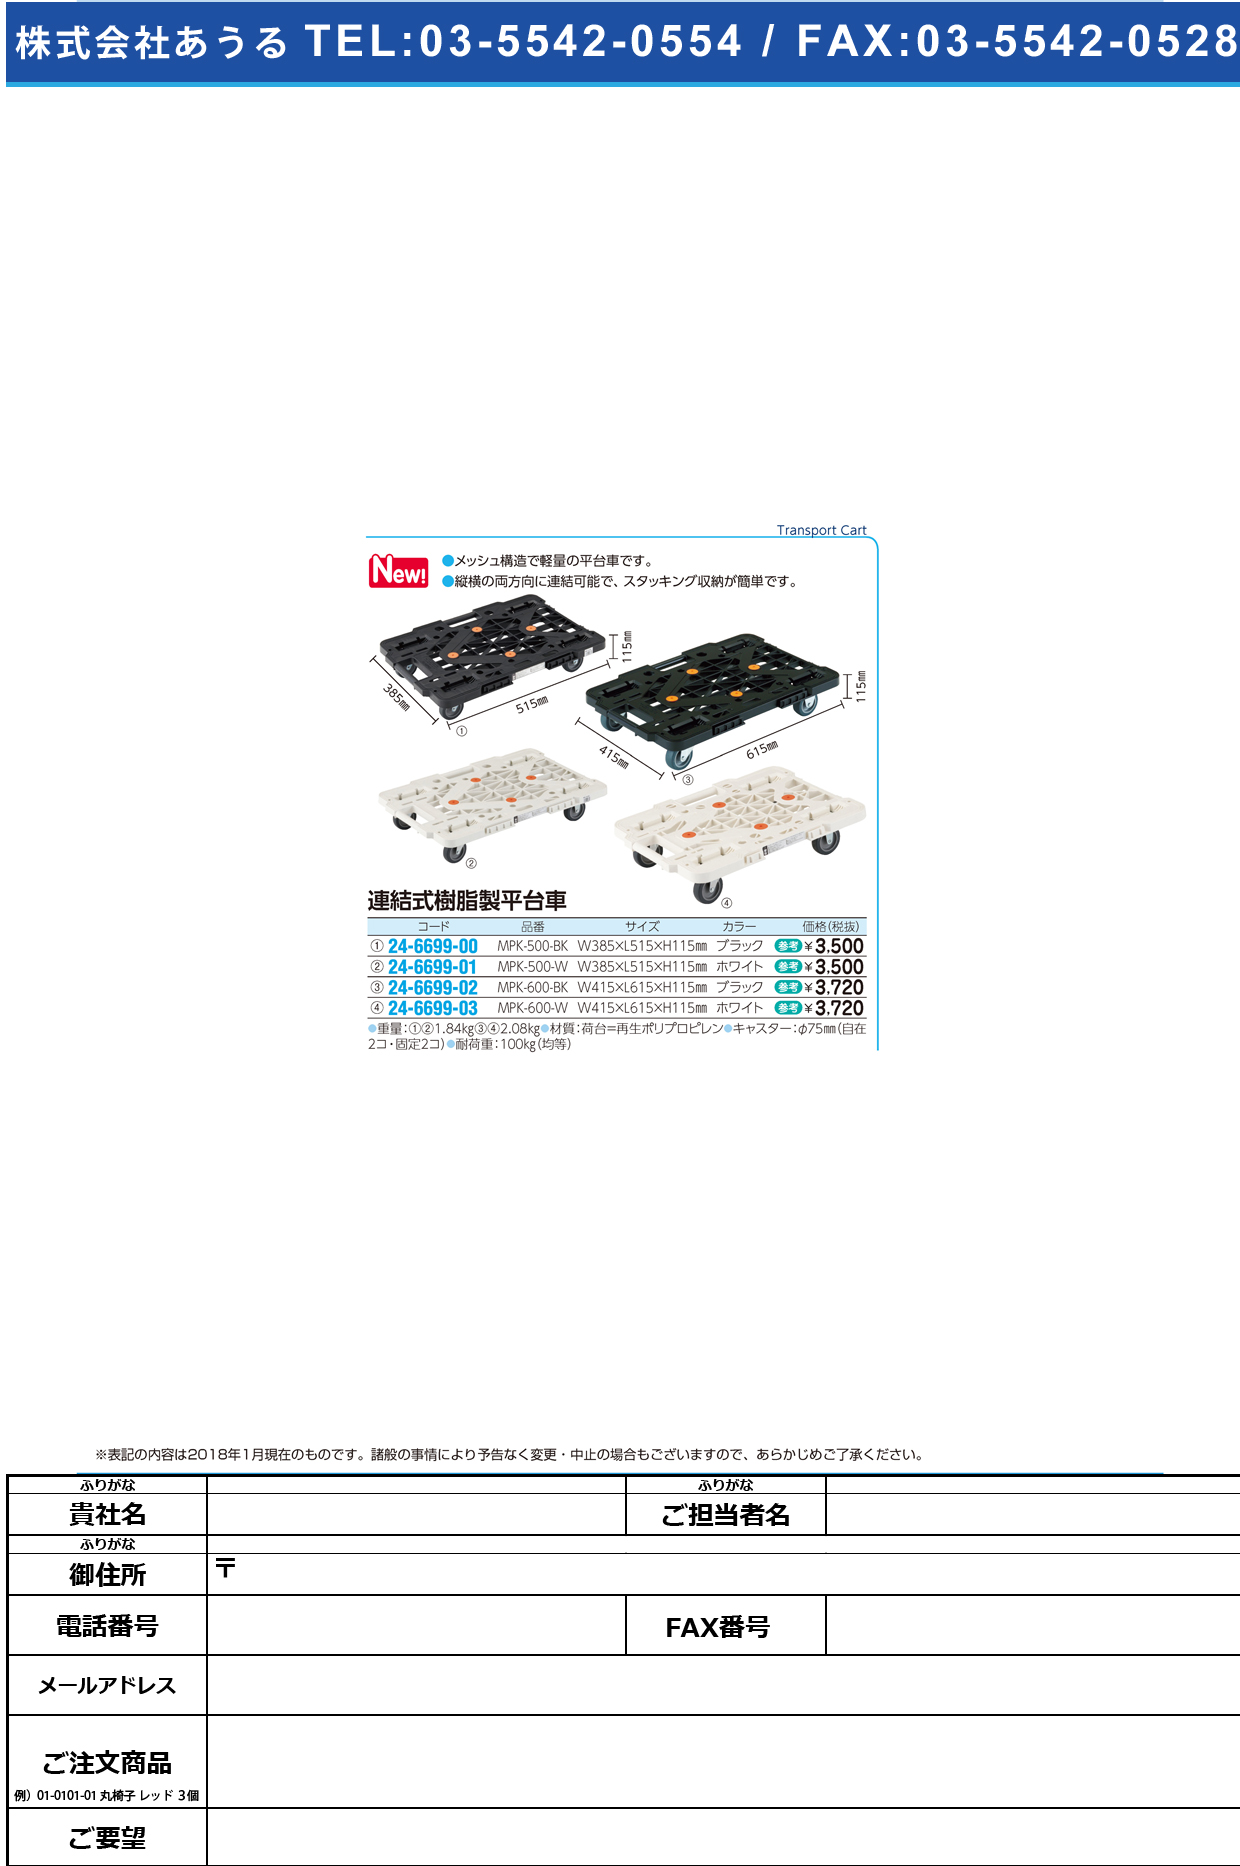 (24-6699-00)連結式樹脂製平台車 MPK-500-BK(ﾌﾞﾗｯｸ) ﾚﾝｹﾂｼﾞｭｼｾｲﾋﾗﾀﾞｲｼｬ【1台単位】【2018年カタログ商品】